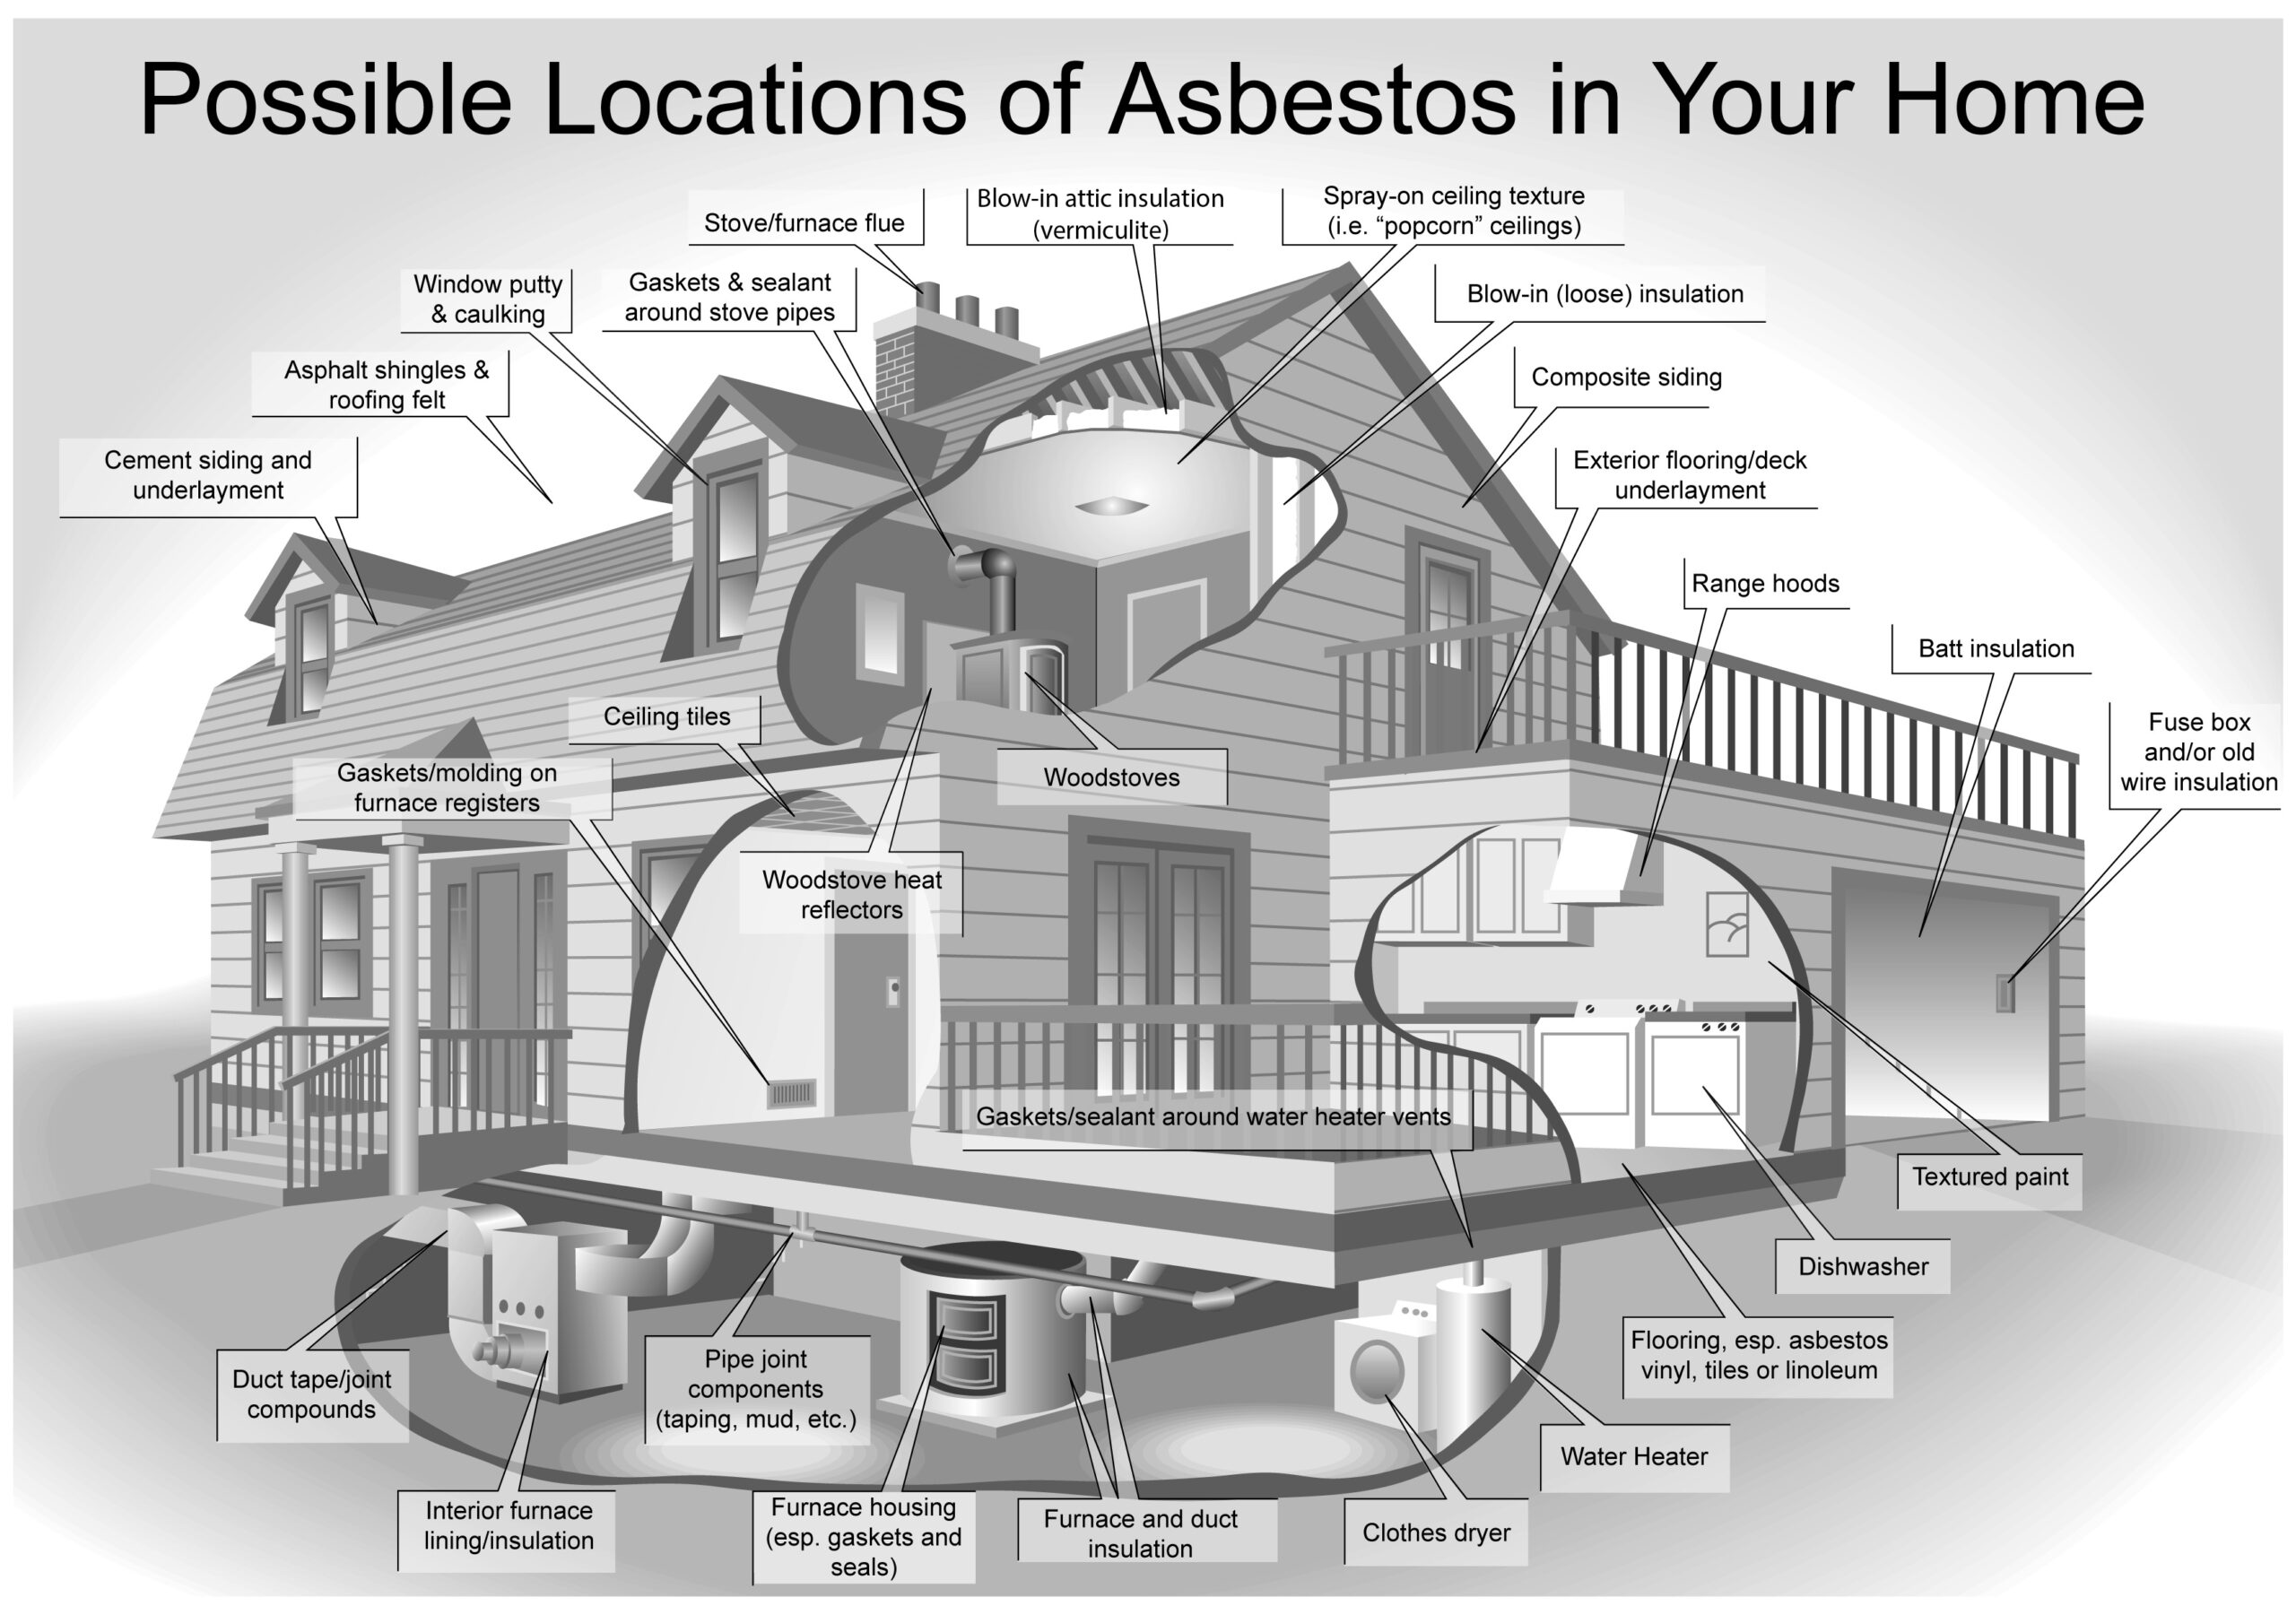 कट-अवे दीवारों और लेबलों के साथ एक घर दिखाते हुए ग्राफिक ड्राइंग जहां विभिन्न स्थानों को दिखाती है asbestos सामग्री मिल सकती है।